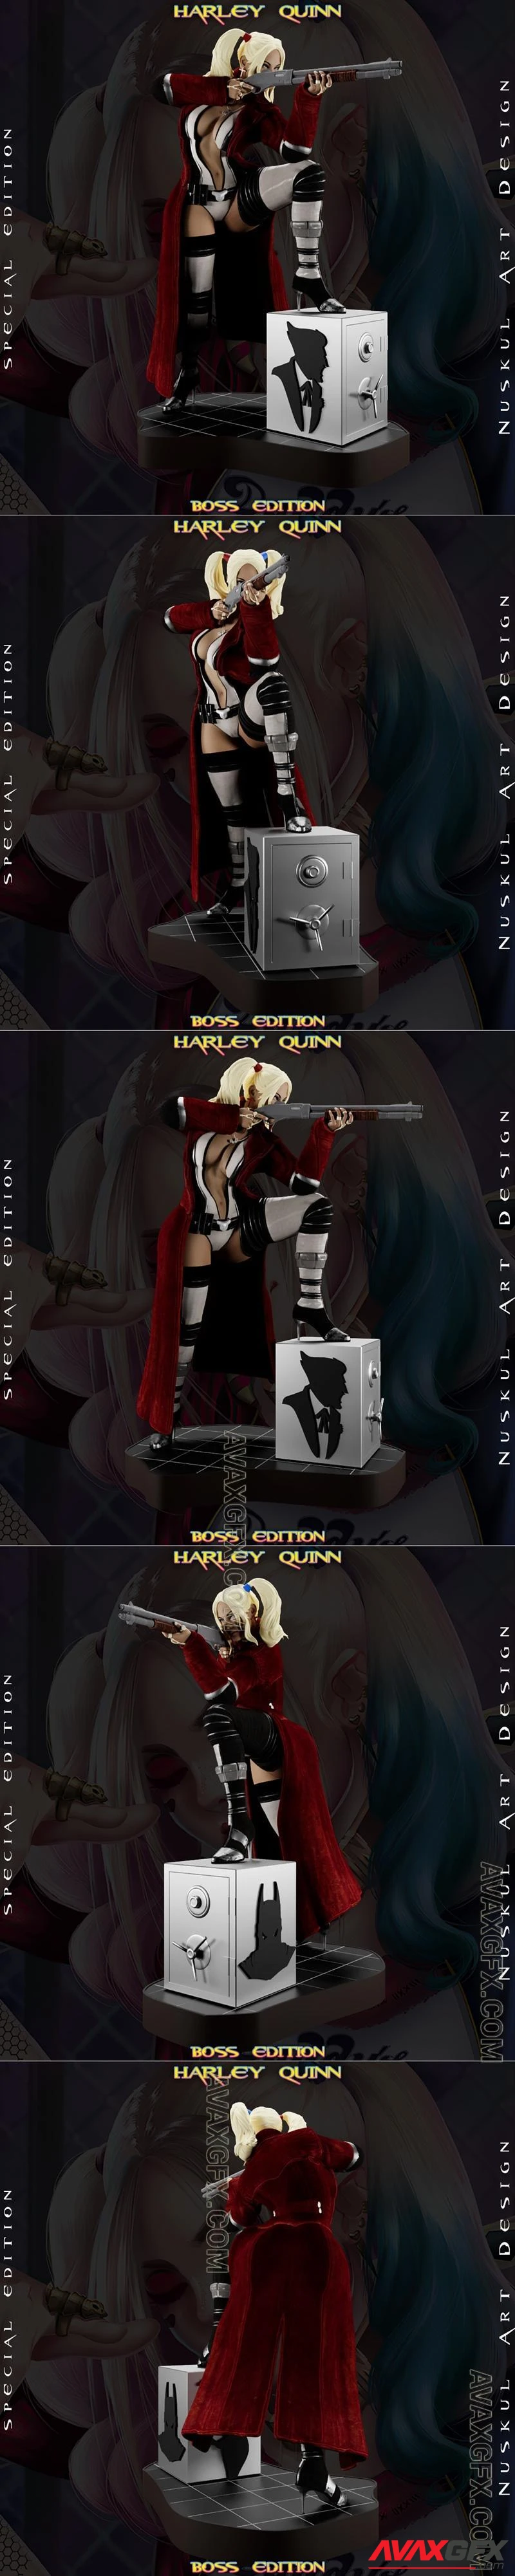 Nuskul Art - Boss Version Harley Quinn - STL 3D Model